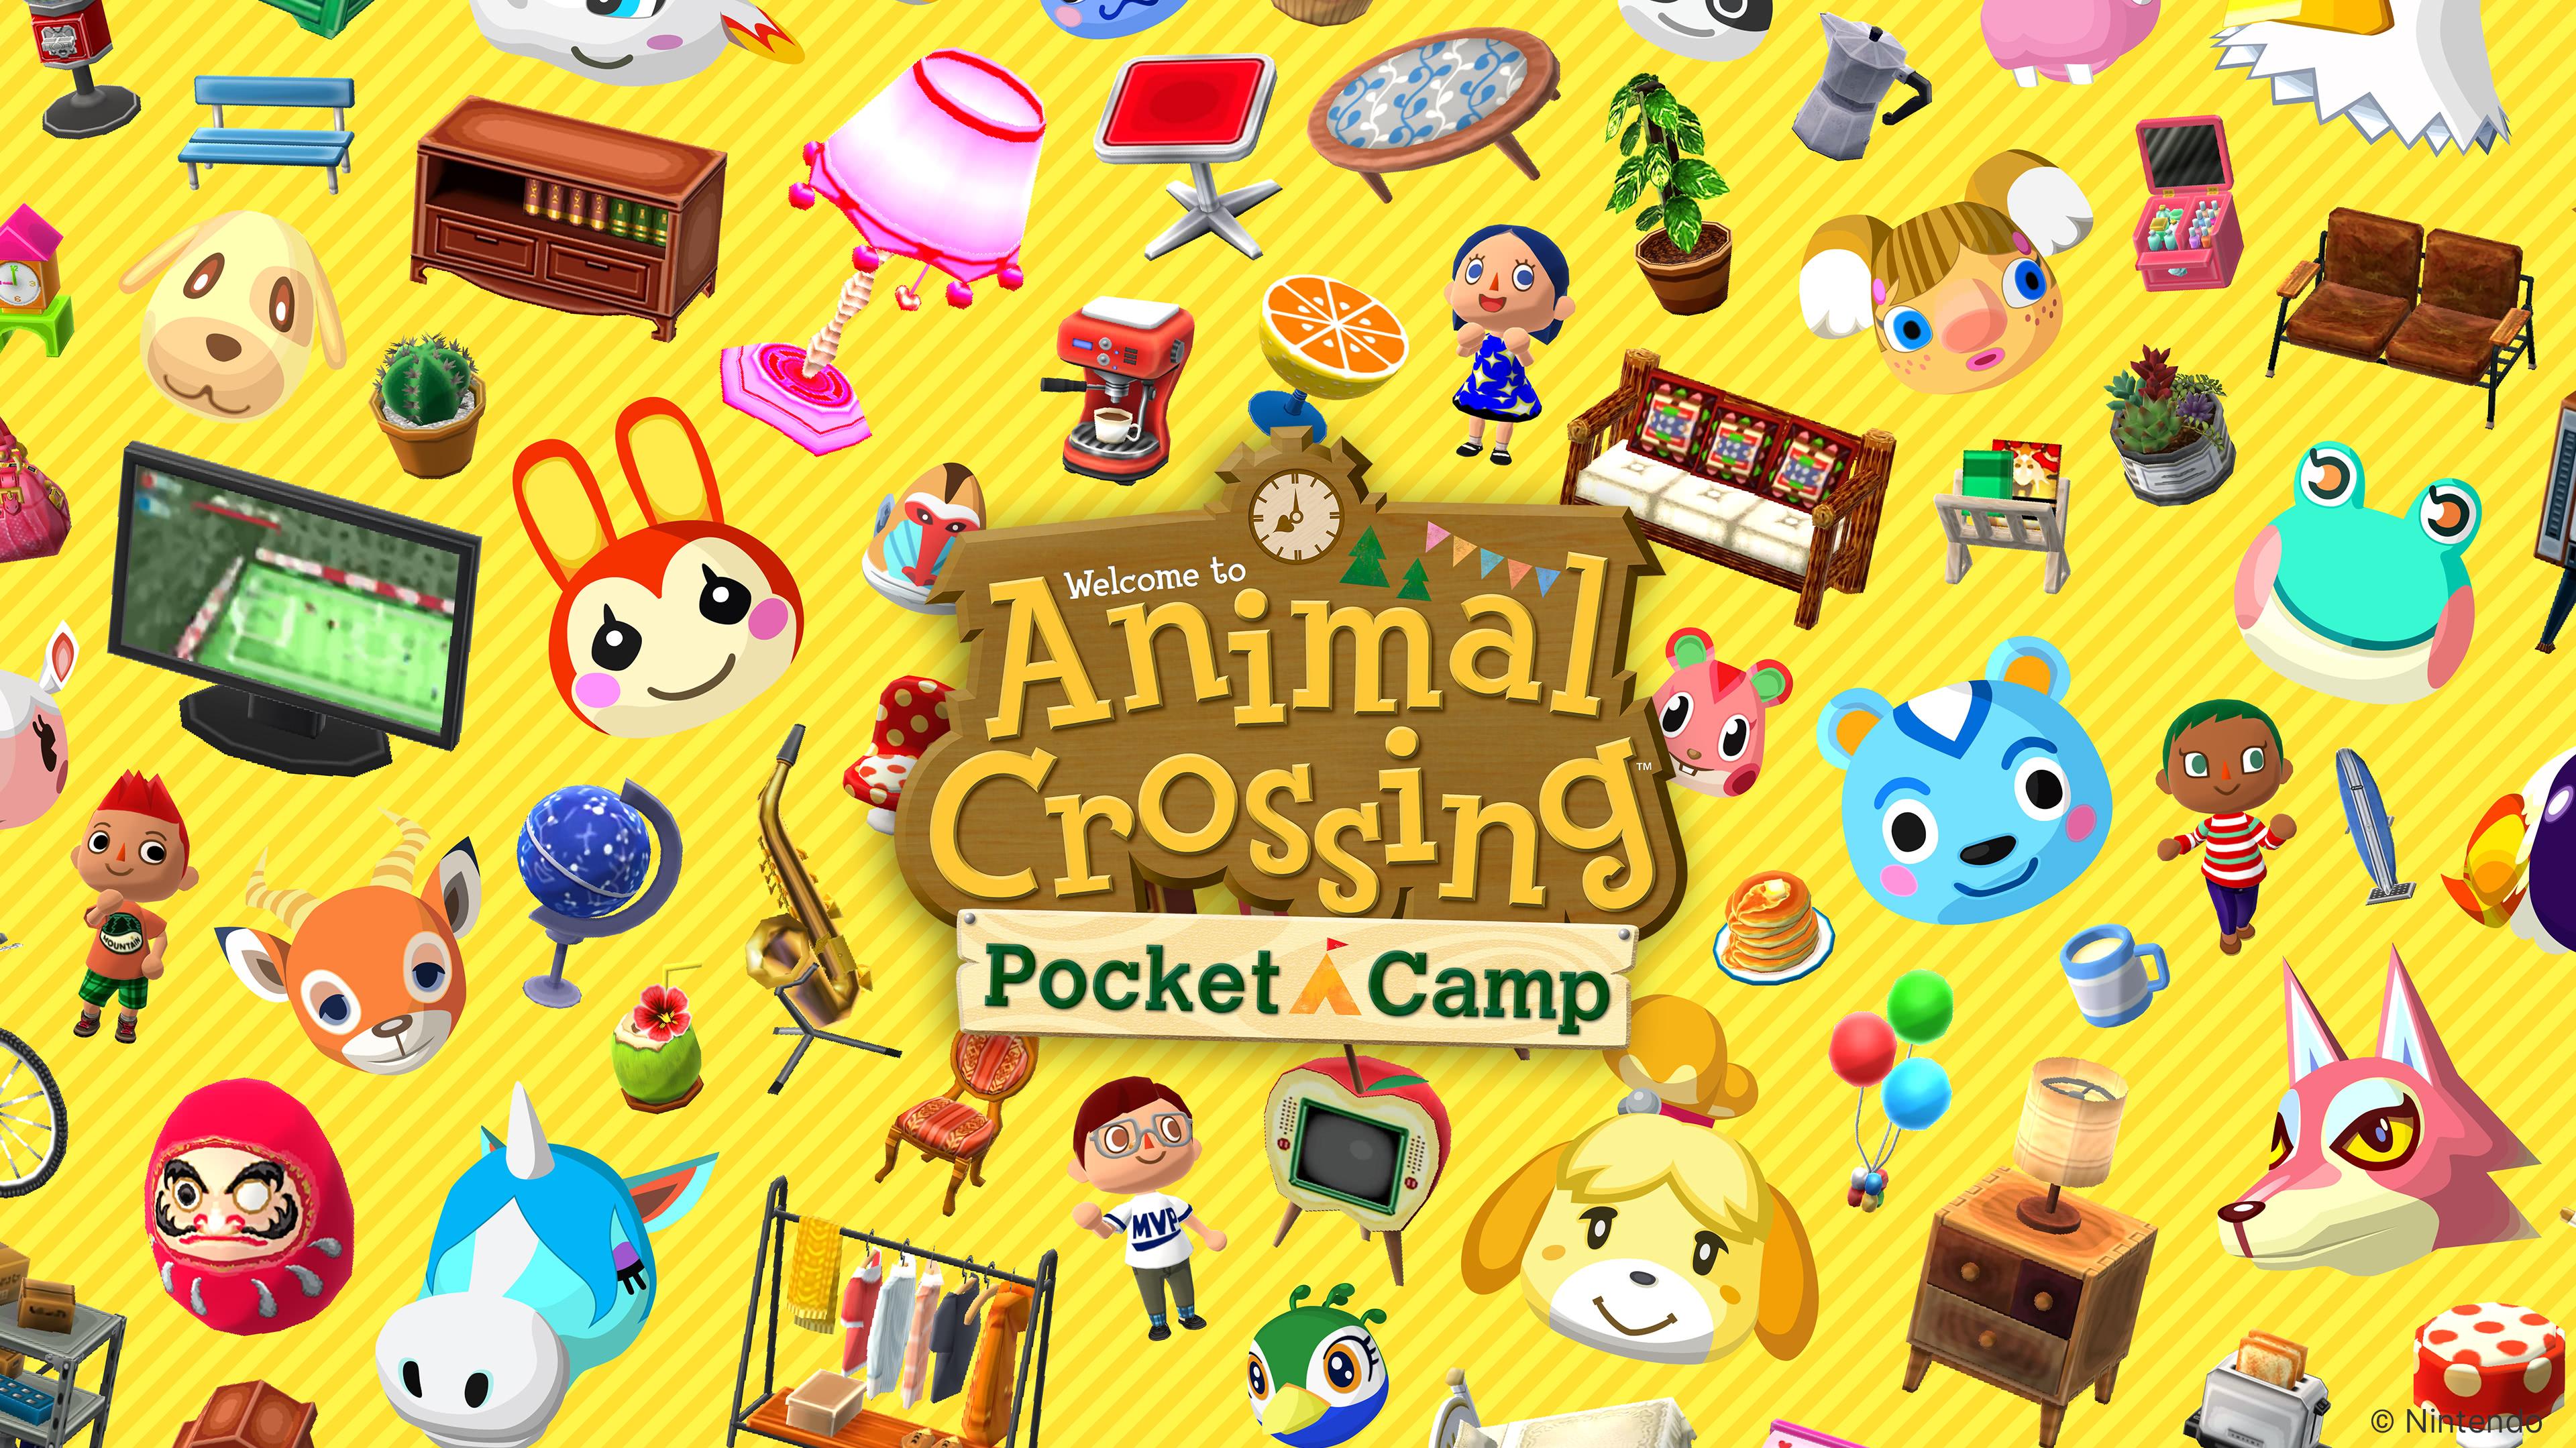 Animal Crossing Pocket Camp UHD 4k Wallpaper Cc